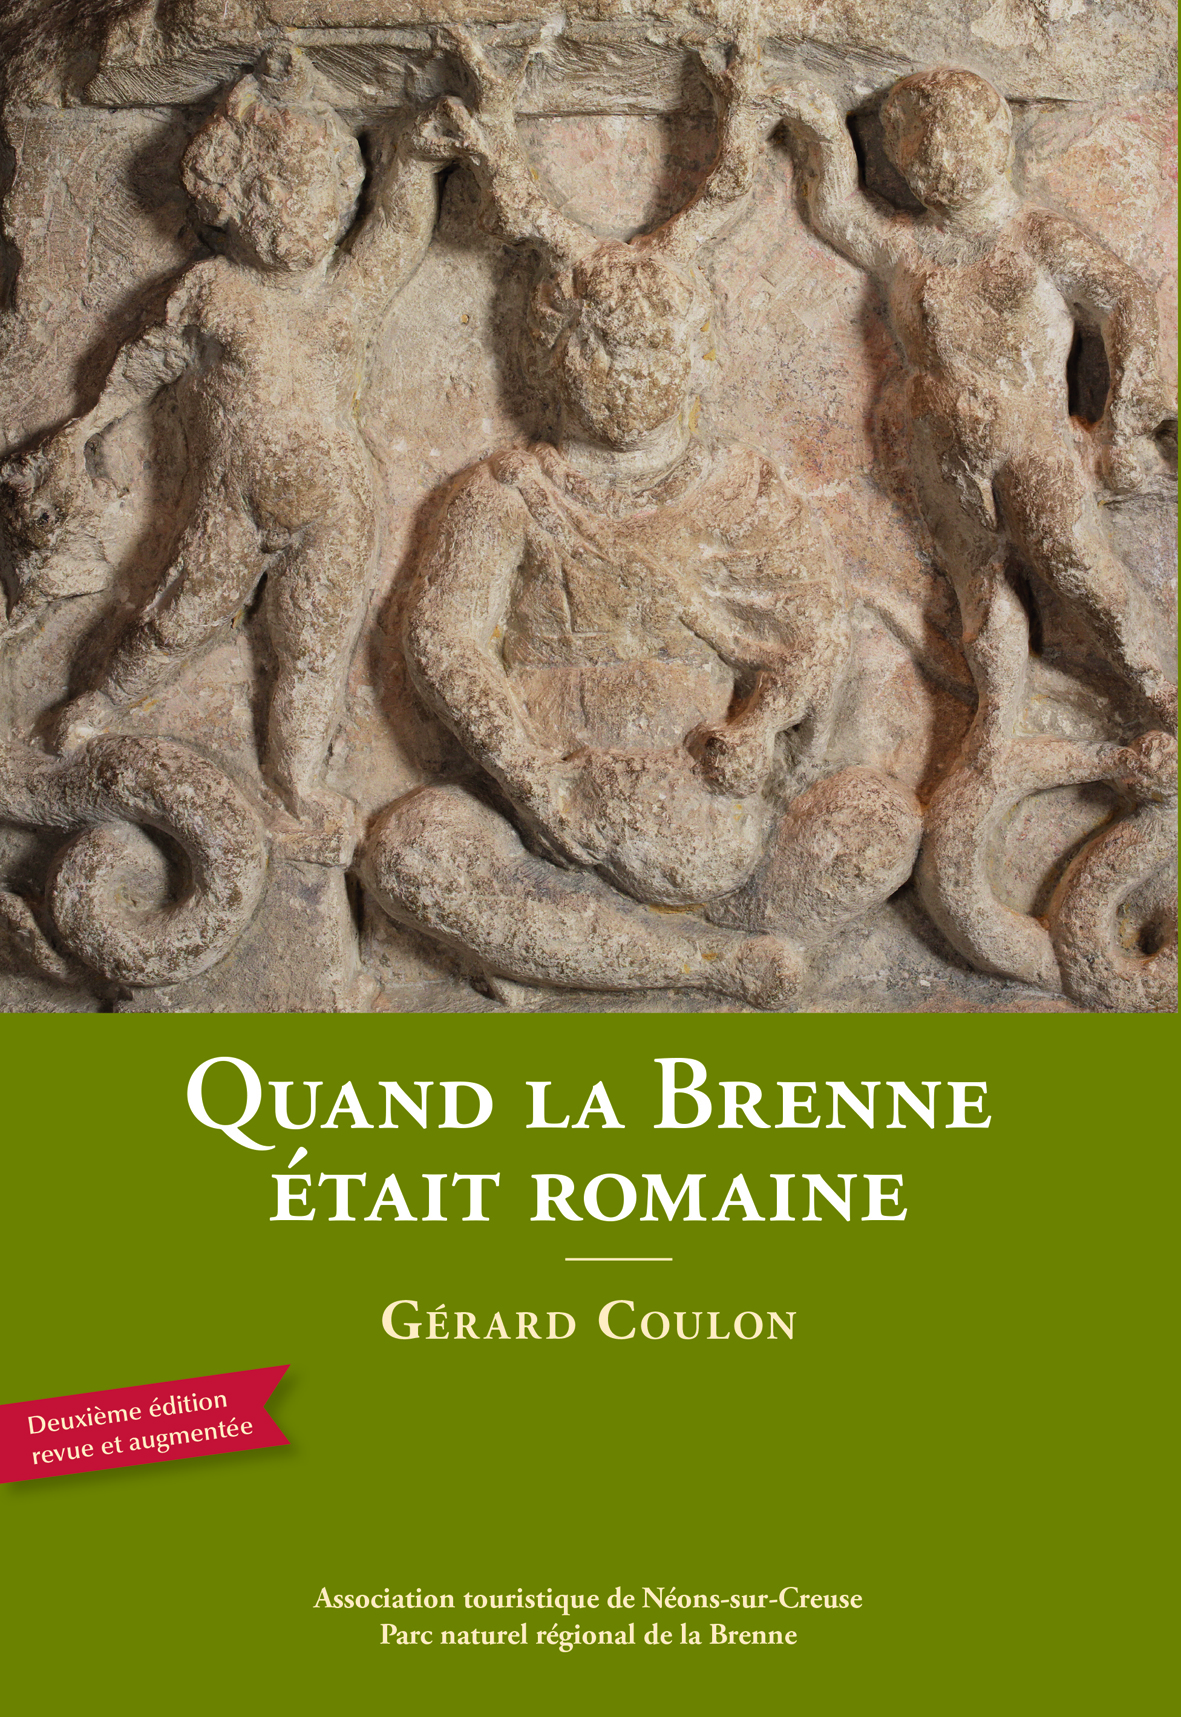 ÉPUISÉ - Quand la Brenne était romaine, 2014, 2e éd. rev. et augm., 176 p.